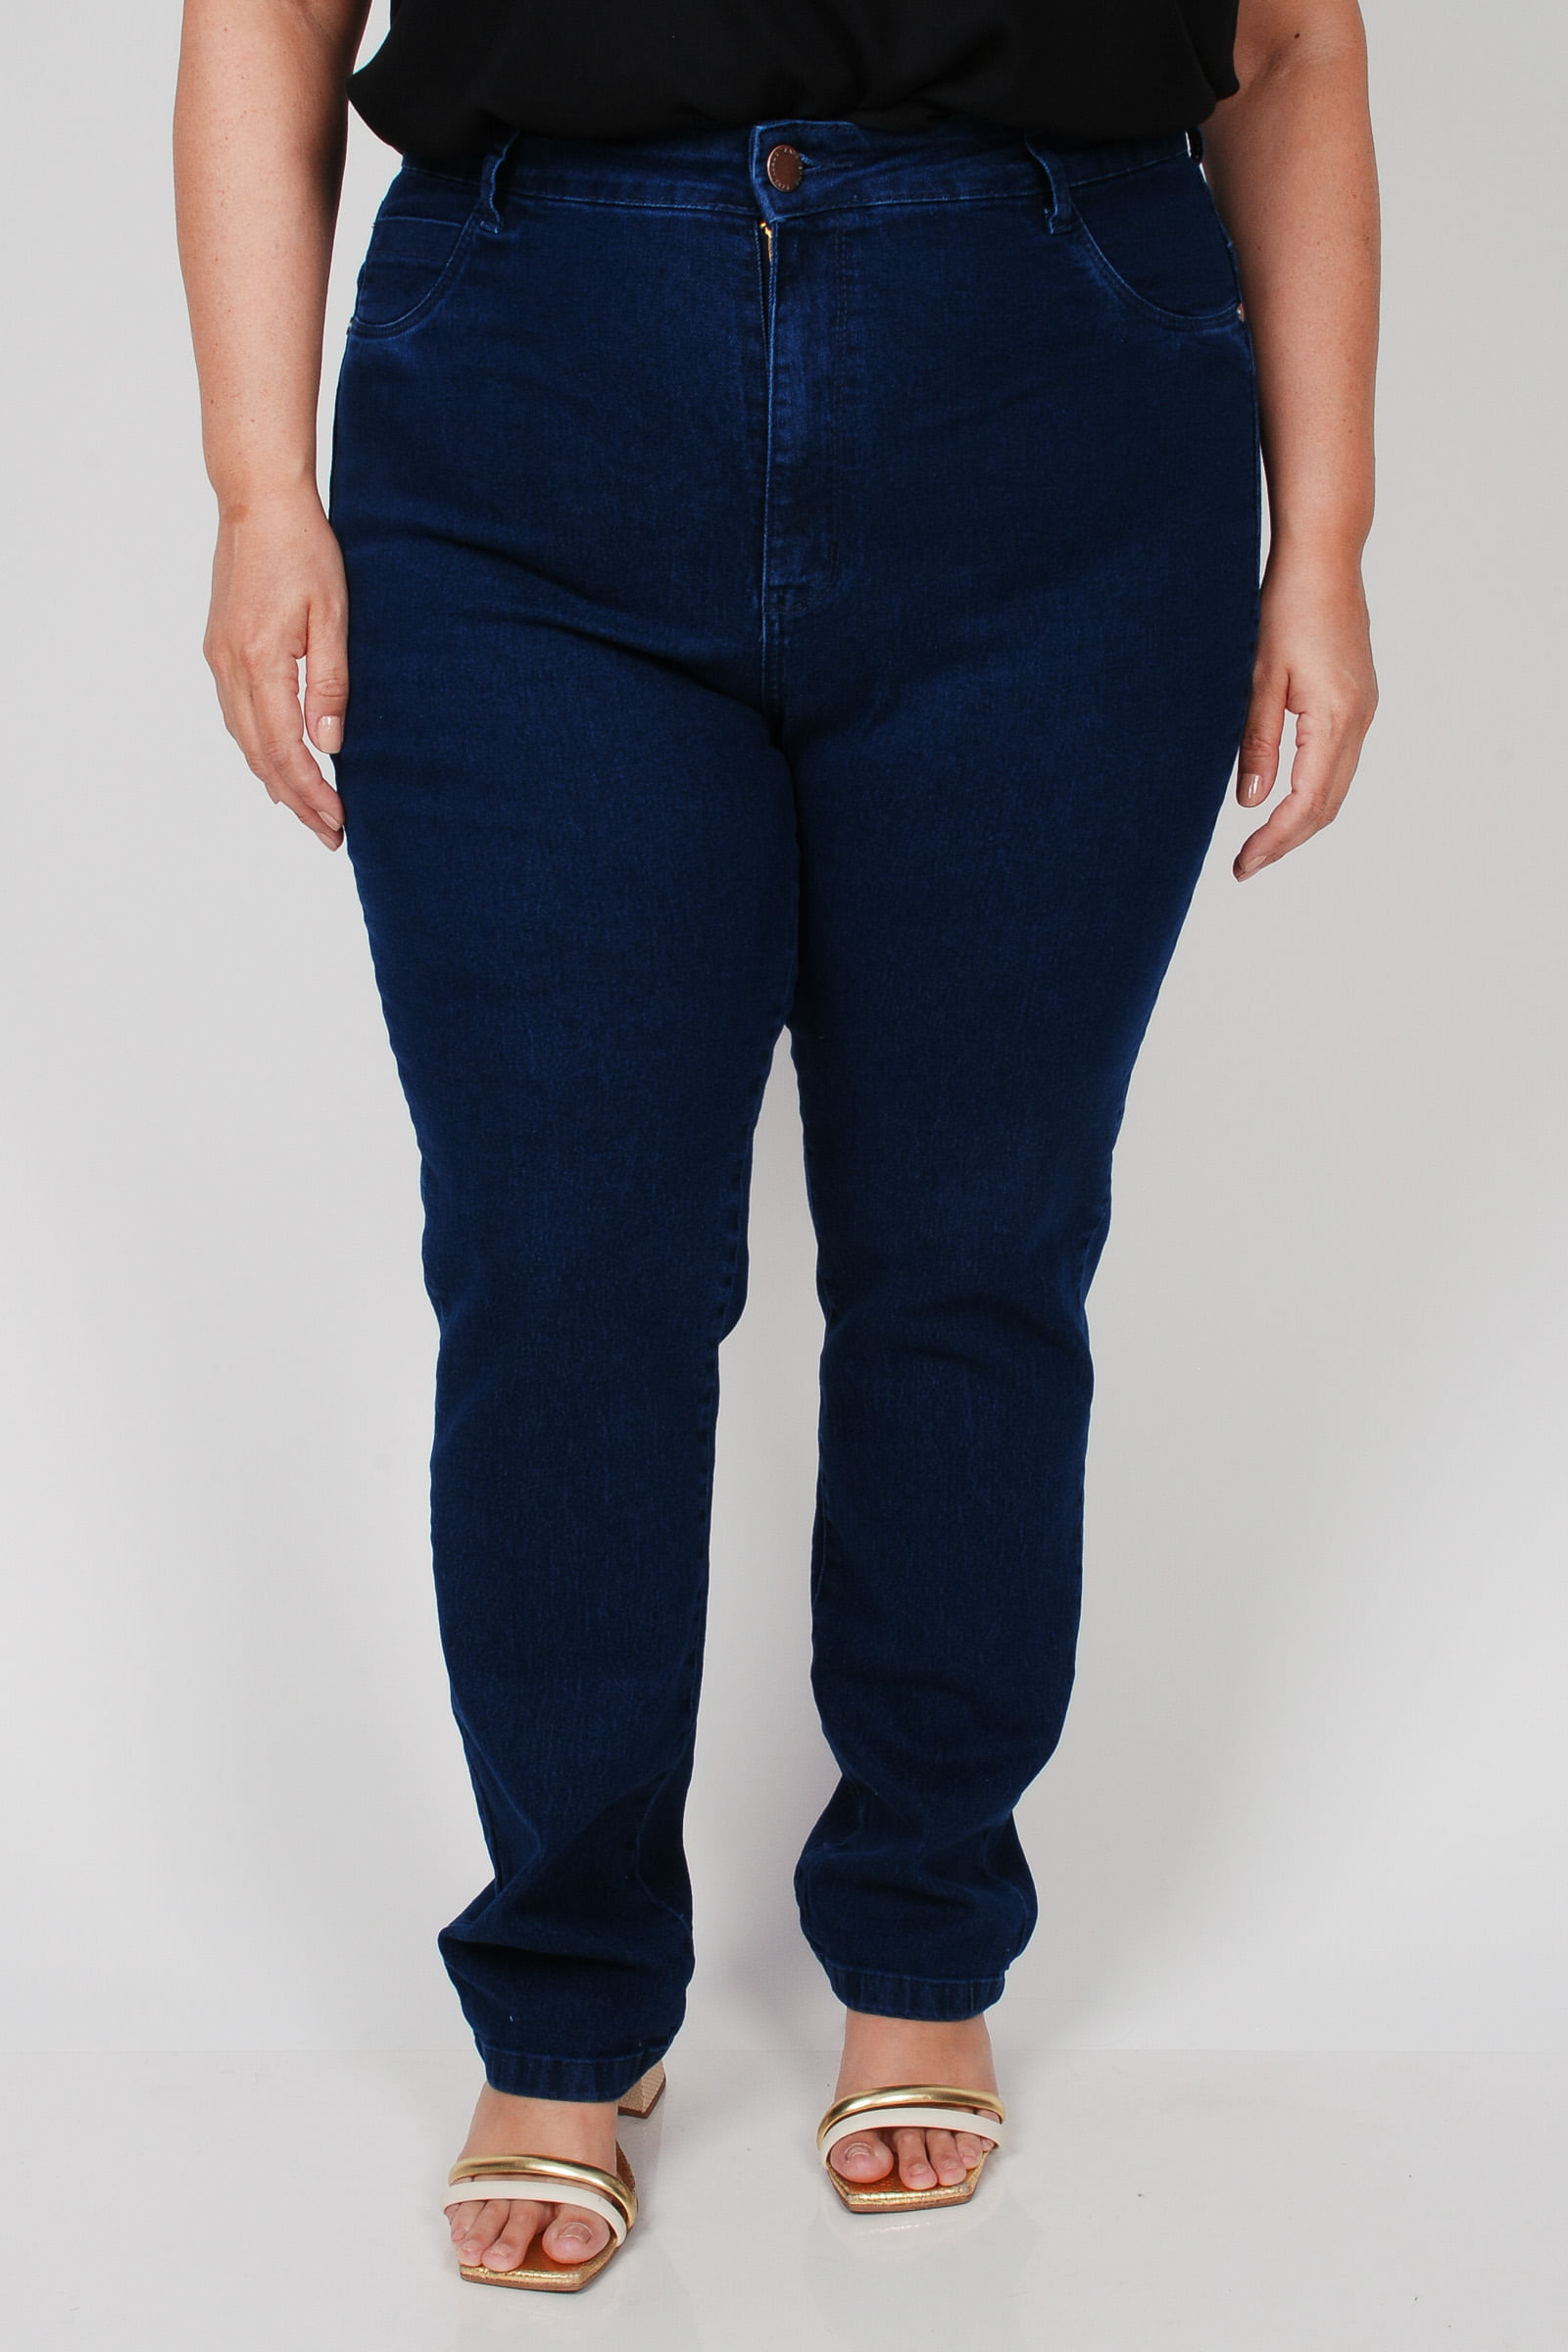 Calca-reta-jeans-feminina-plus-size_0102_3